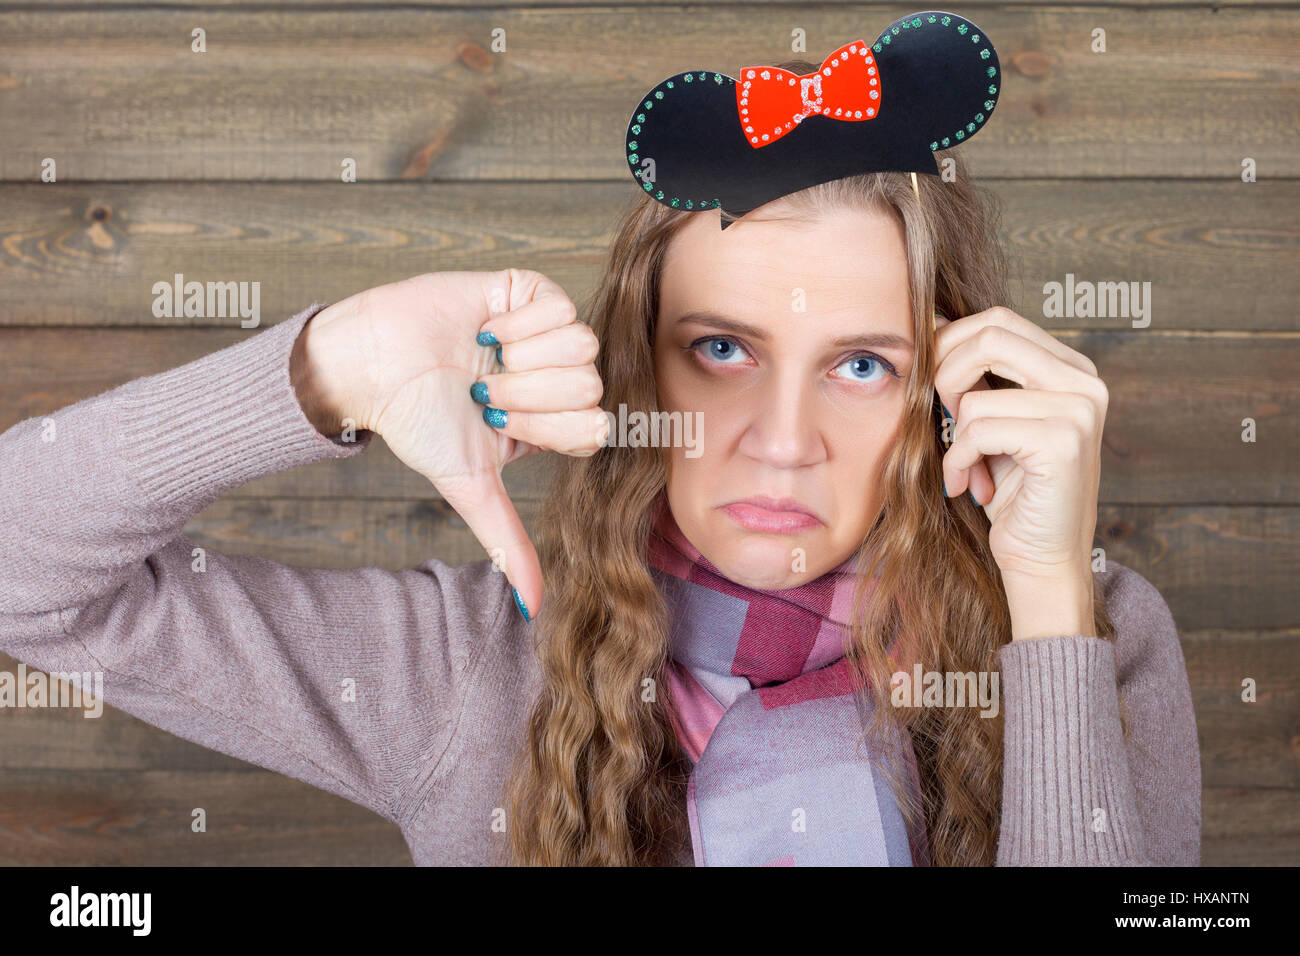 Junge Frau mit lustigen Frisur auf einem Stick zeigt Daumen runter Zeichen, hölzernen Hintergrund. Spaß Foto Requisiten und Zubehör für Shootings Stockfoto